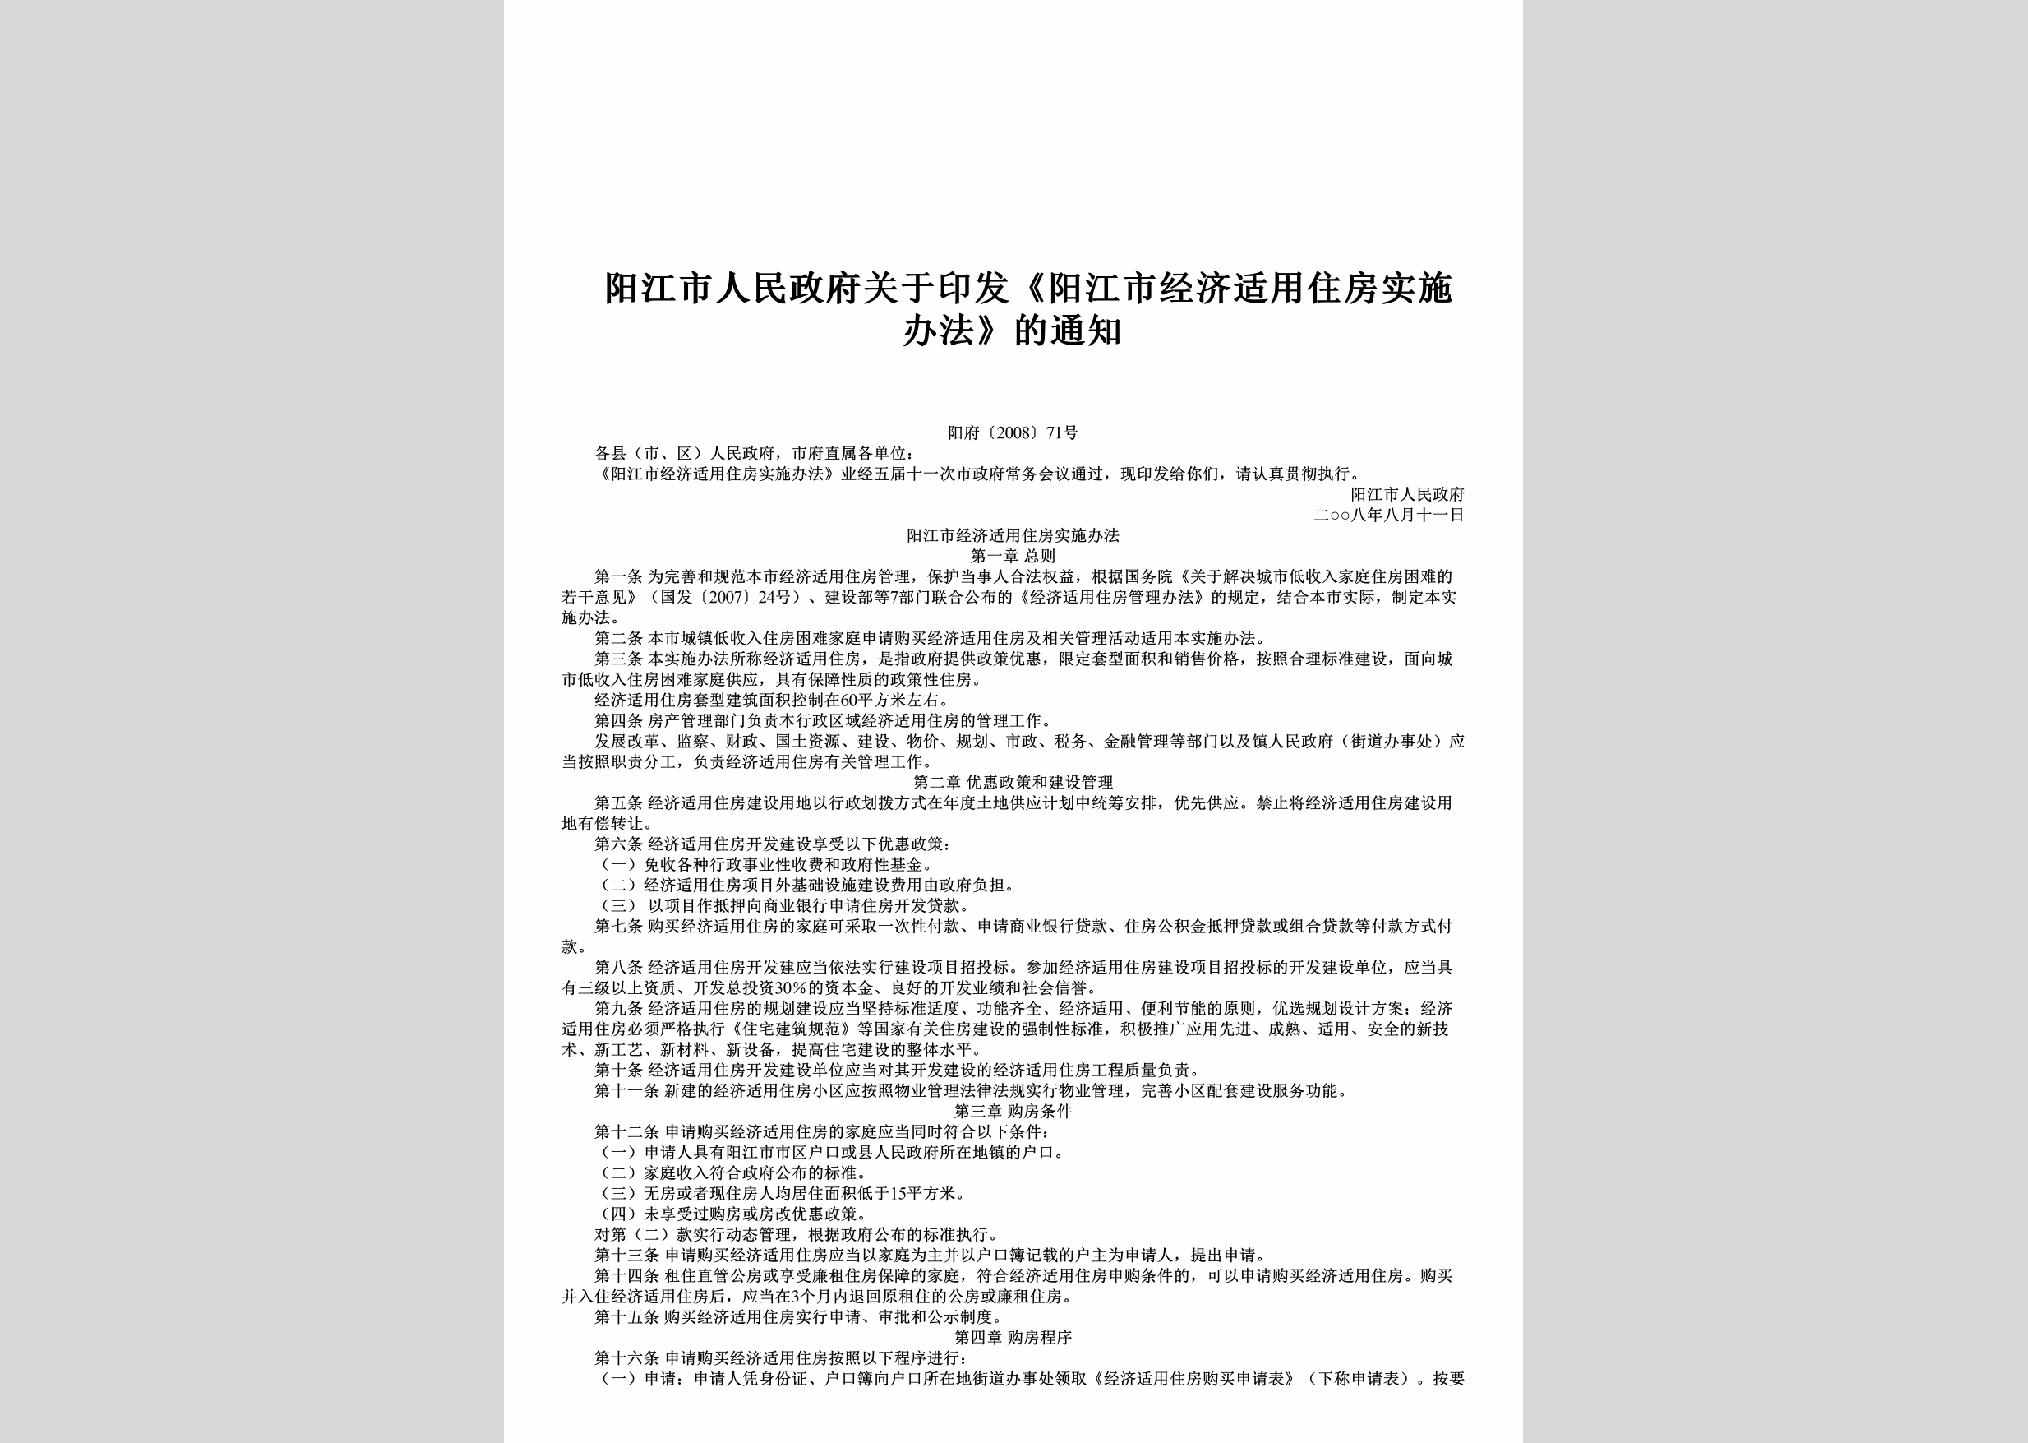 阳府[2008]71号：关于印发《阳江市经济适用住房实施办法》的通知